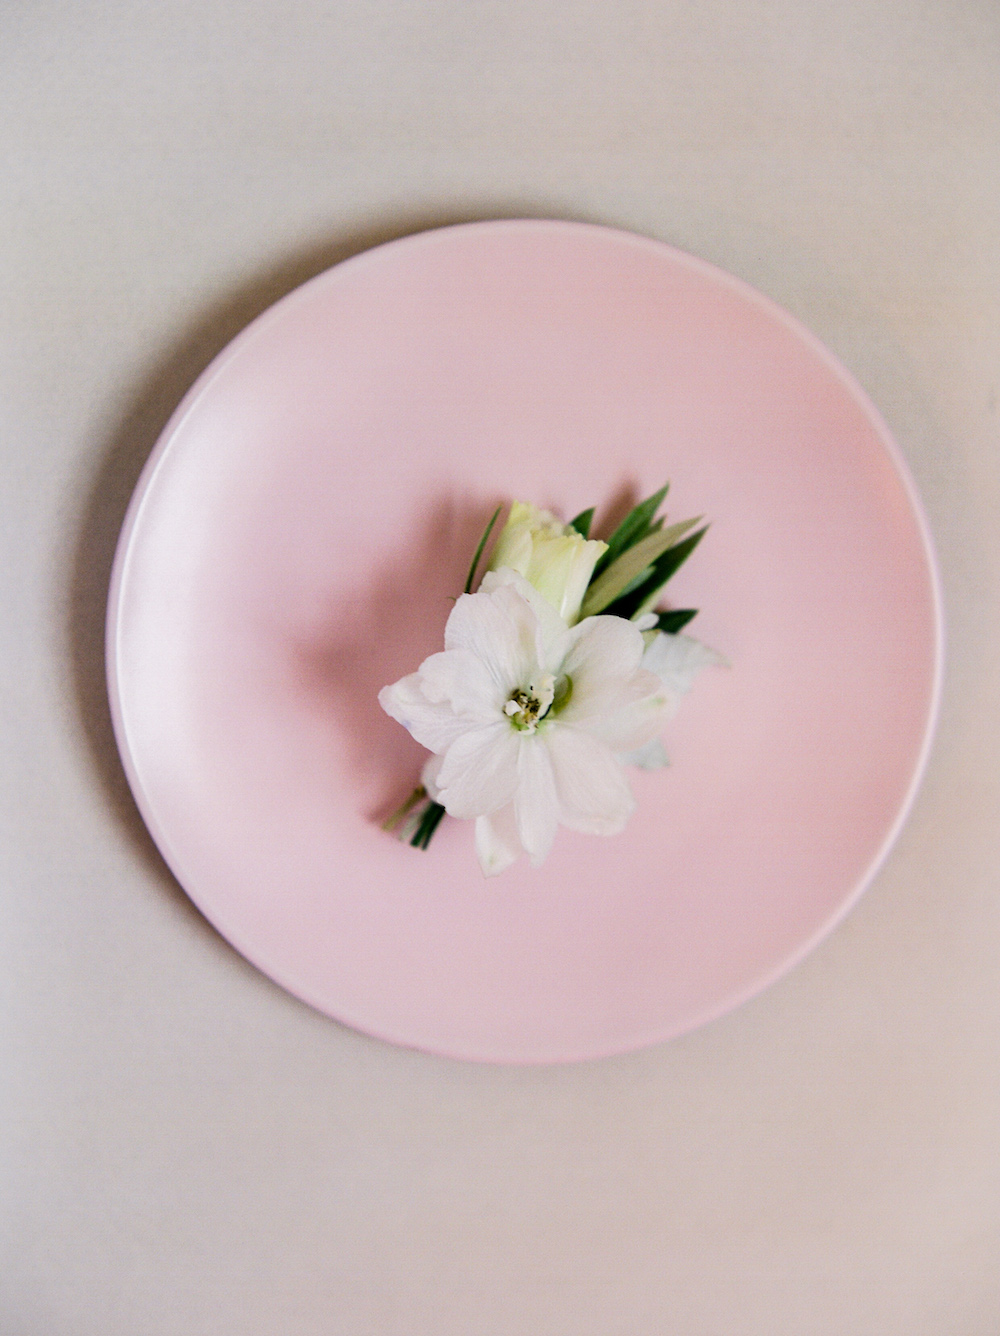 White Boutonniere - Wedding Flower Ideas